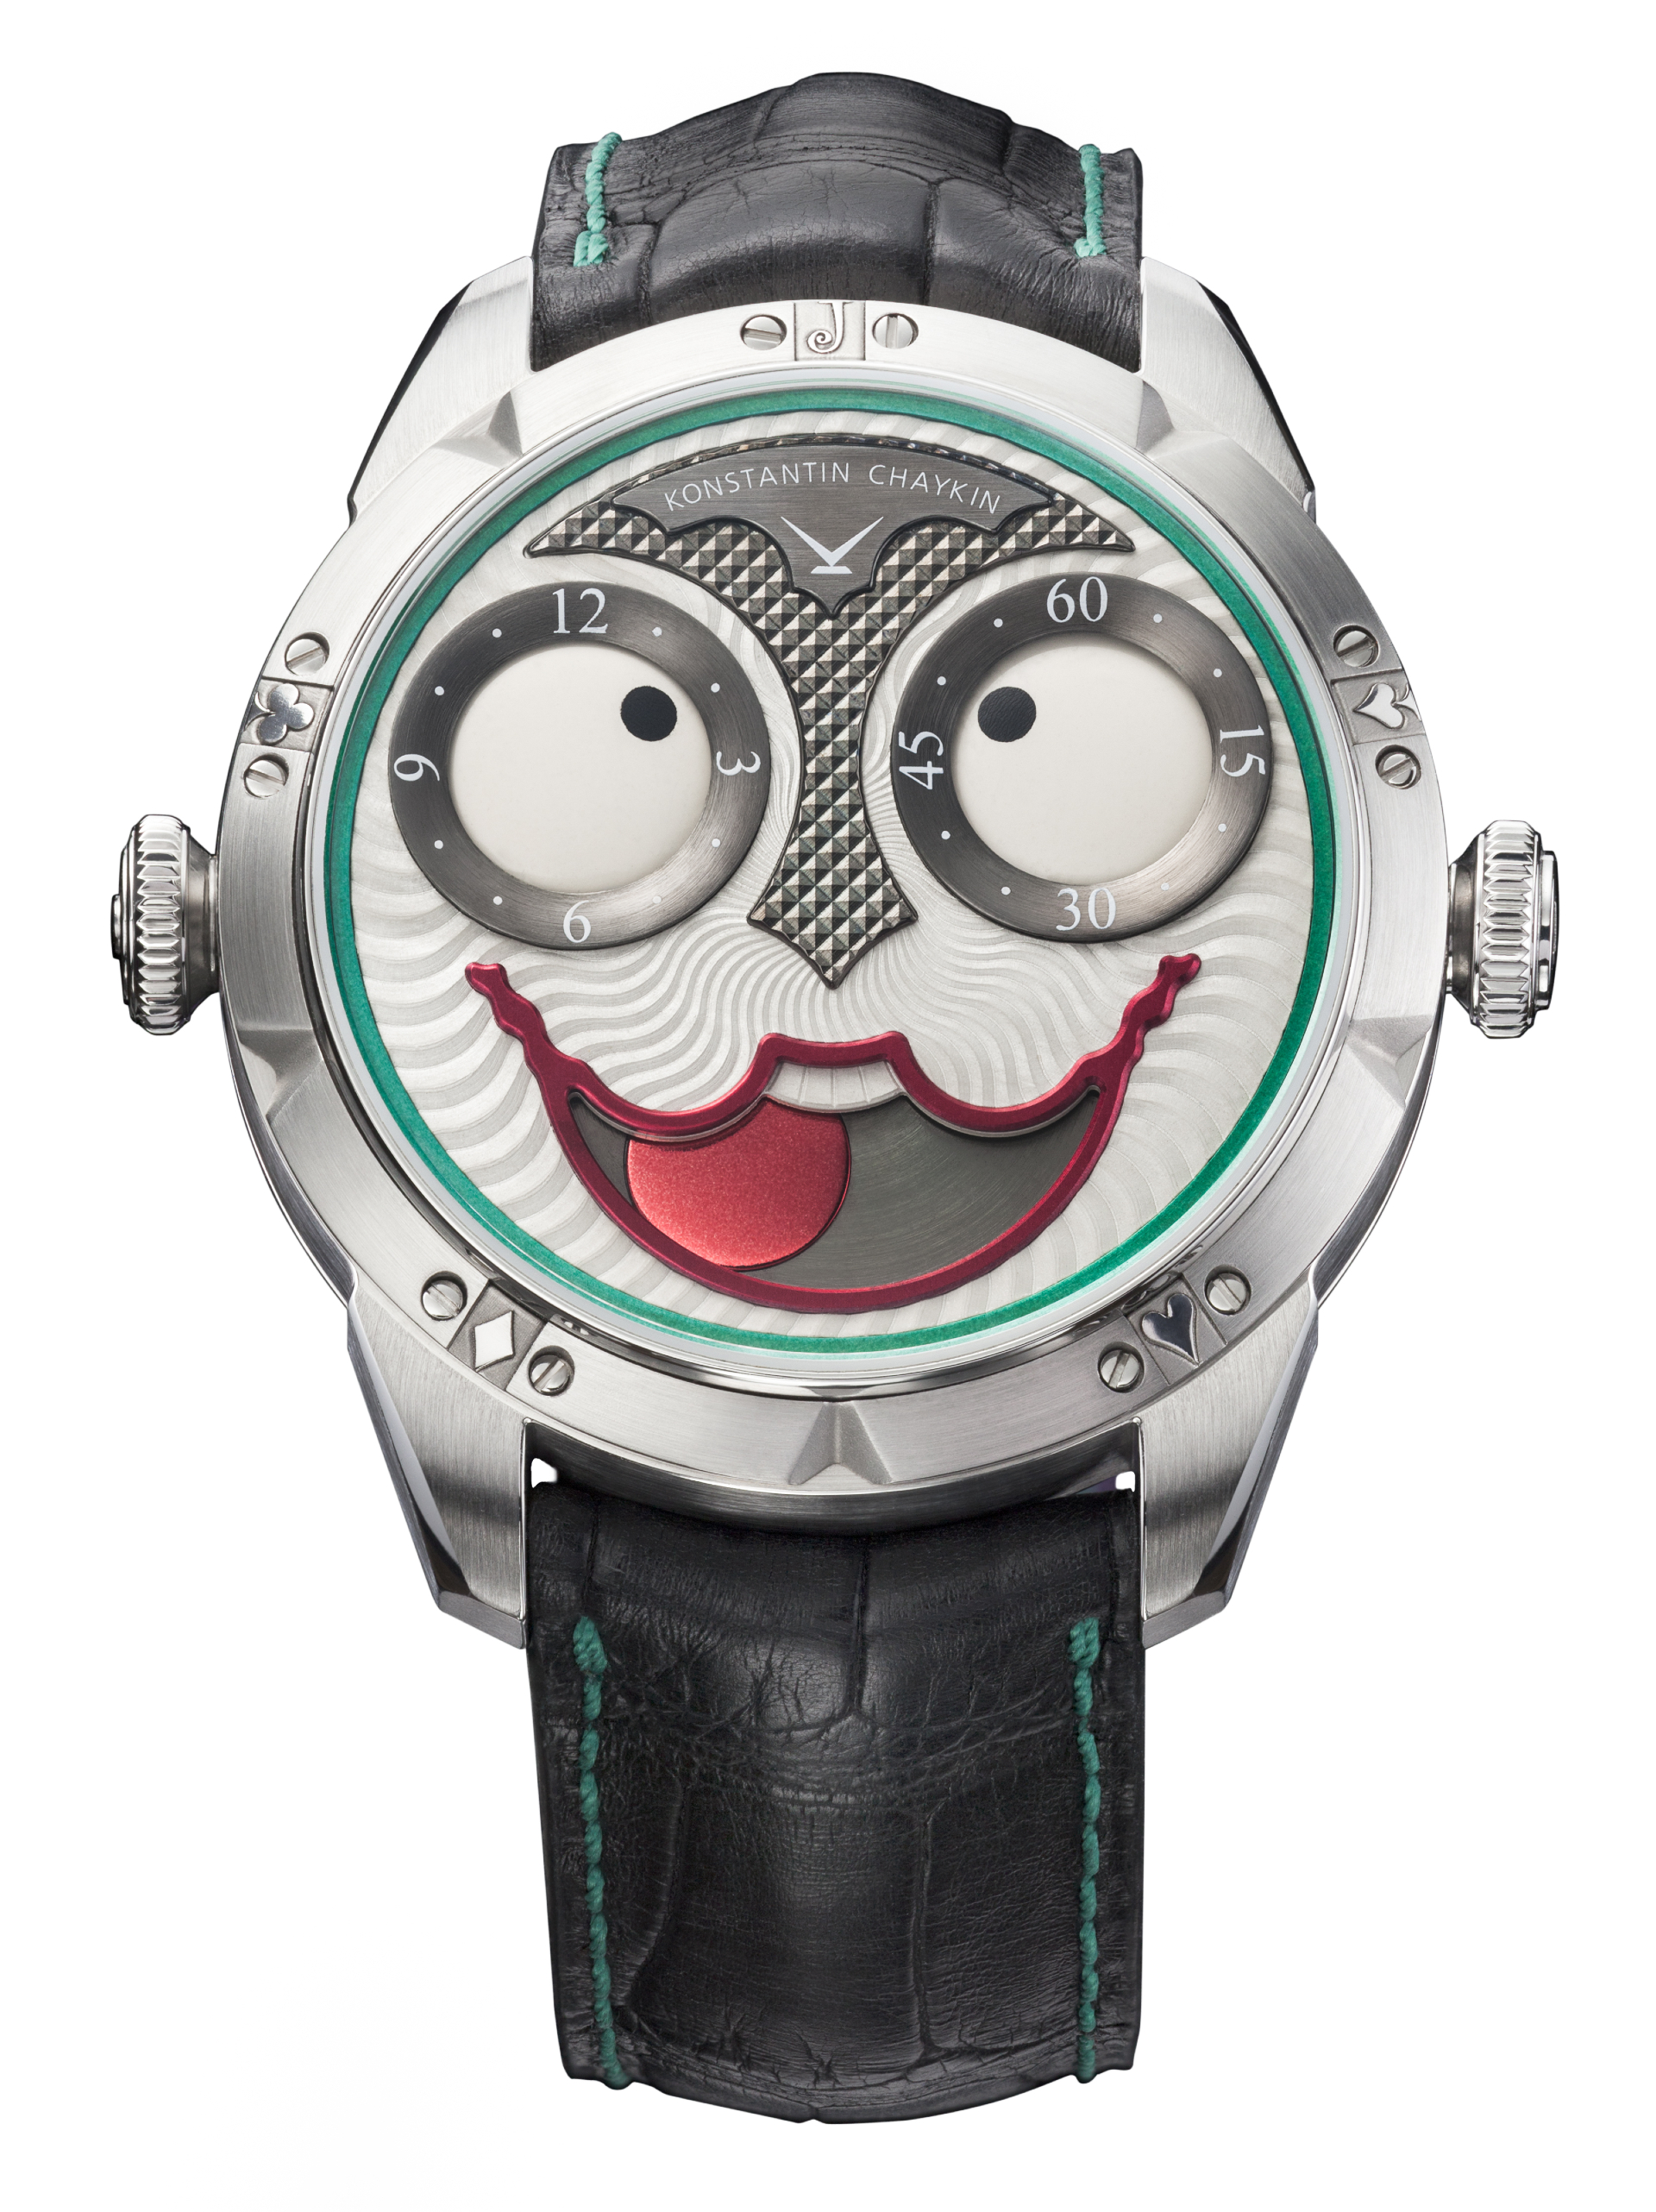 Часы Joker, Konstantin Chaykin